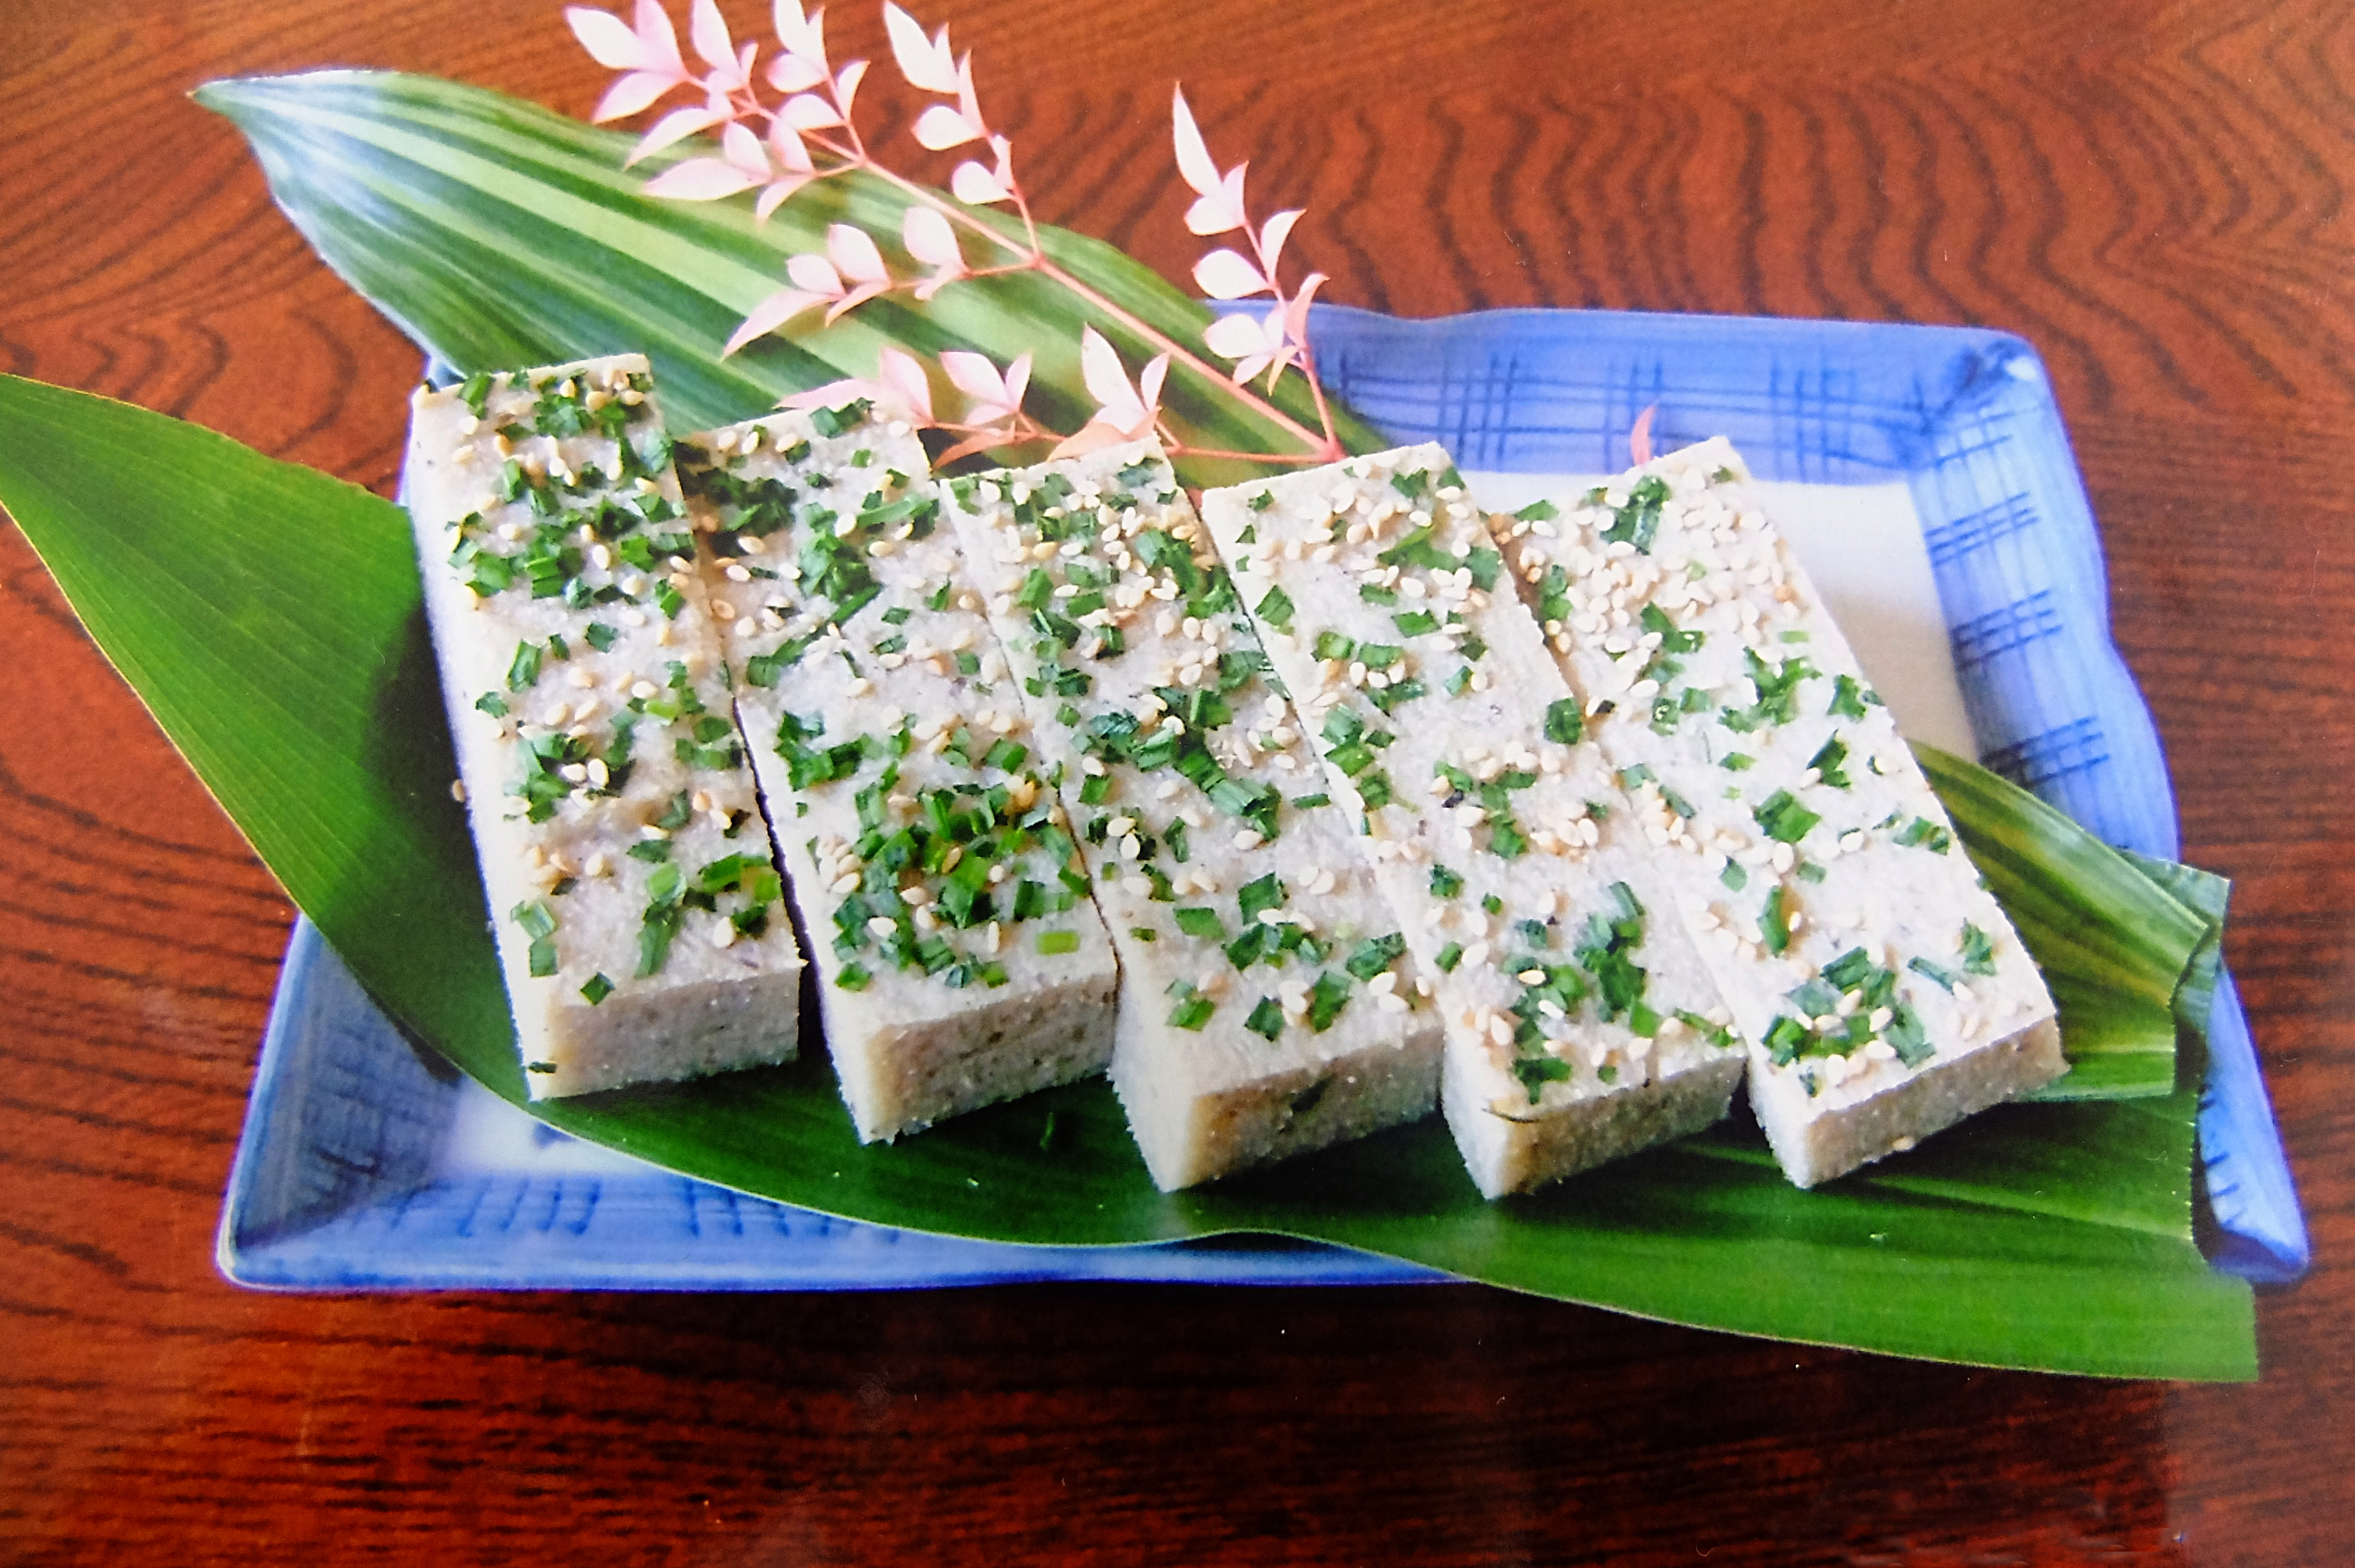 島の郷土料理 イギス豆腐 づくり 上島町公式観光webサイト